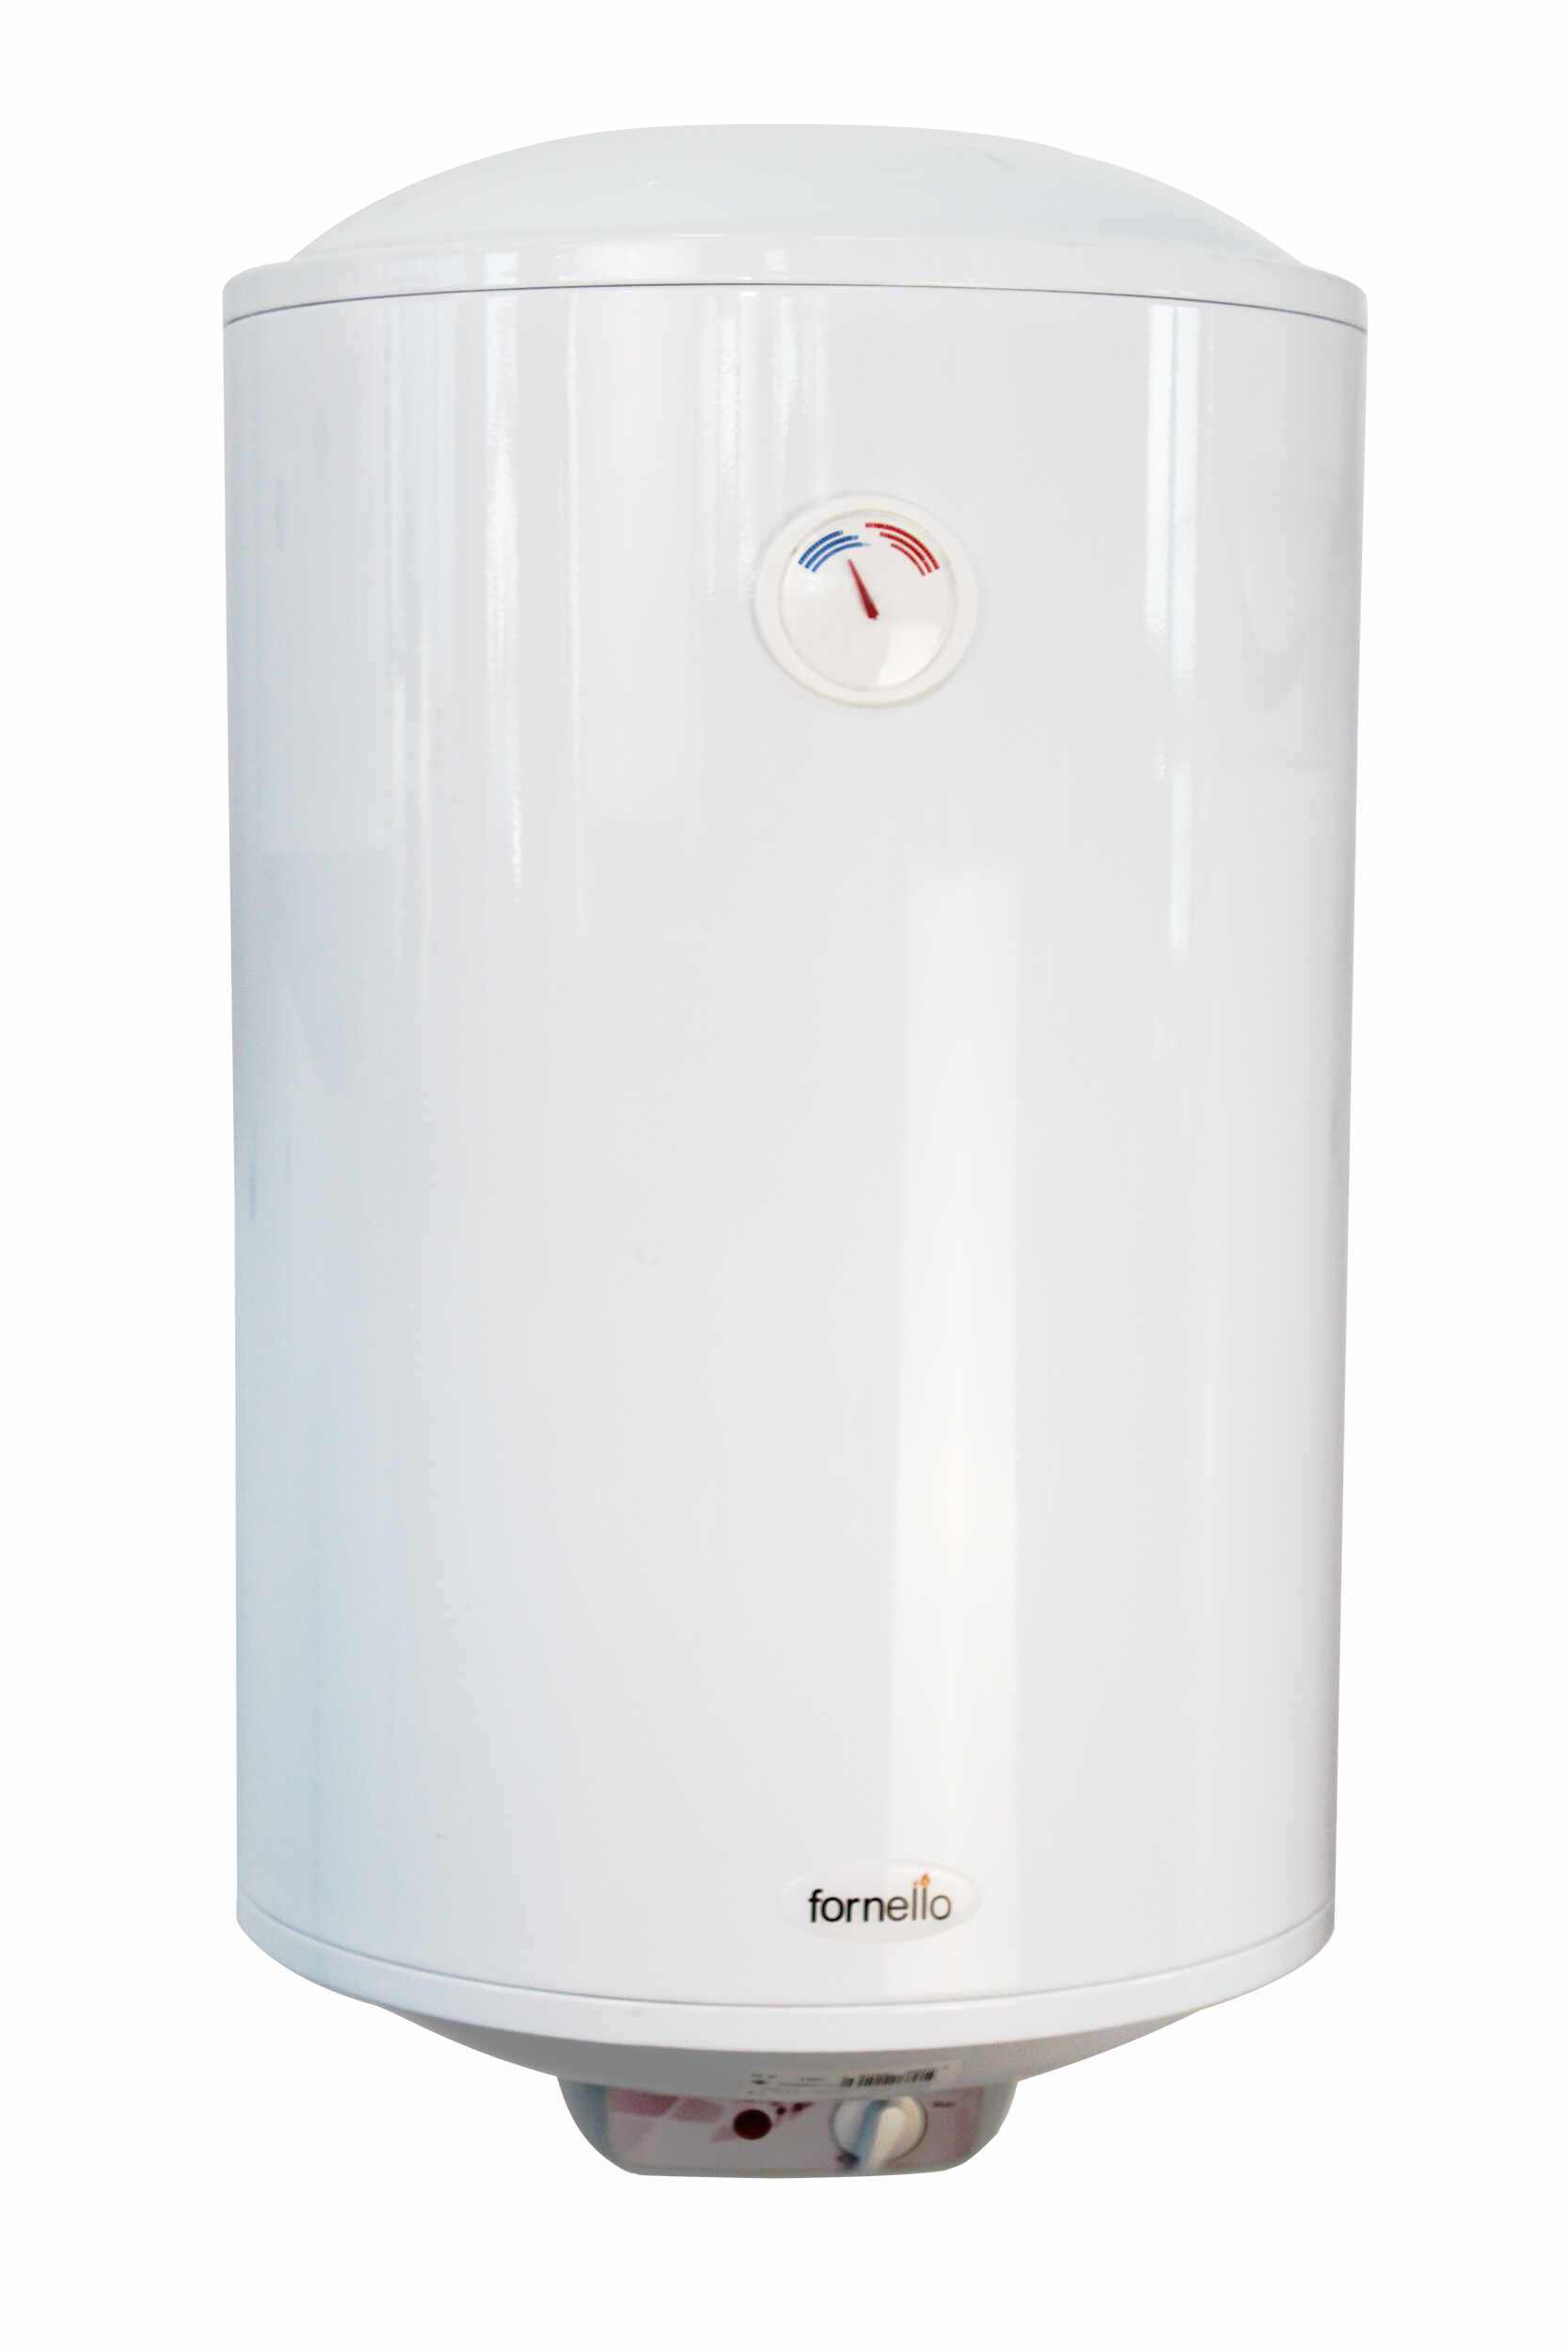 Boiler electric Fornello Titanium Plus 80 litri, 2000 watt, reglaj extern al temperaturii, emailat cu titan